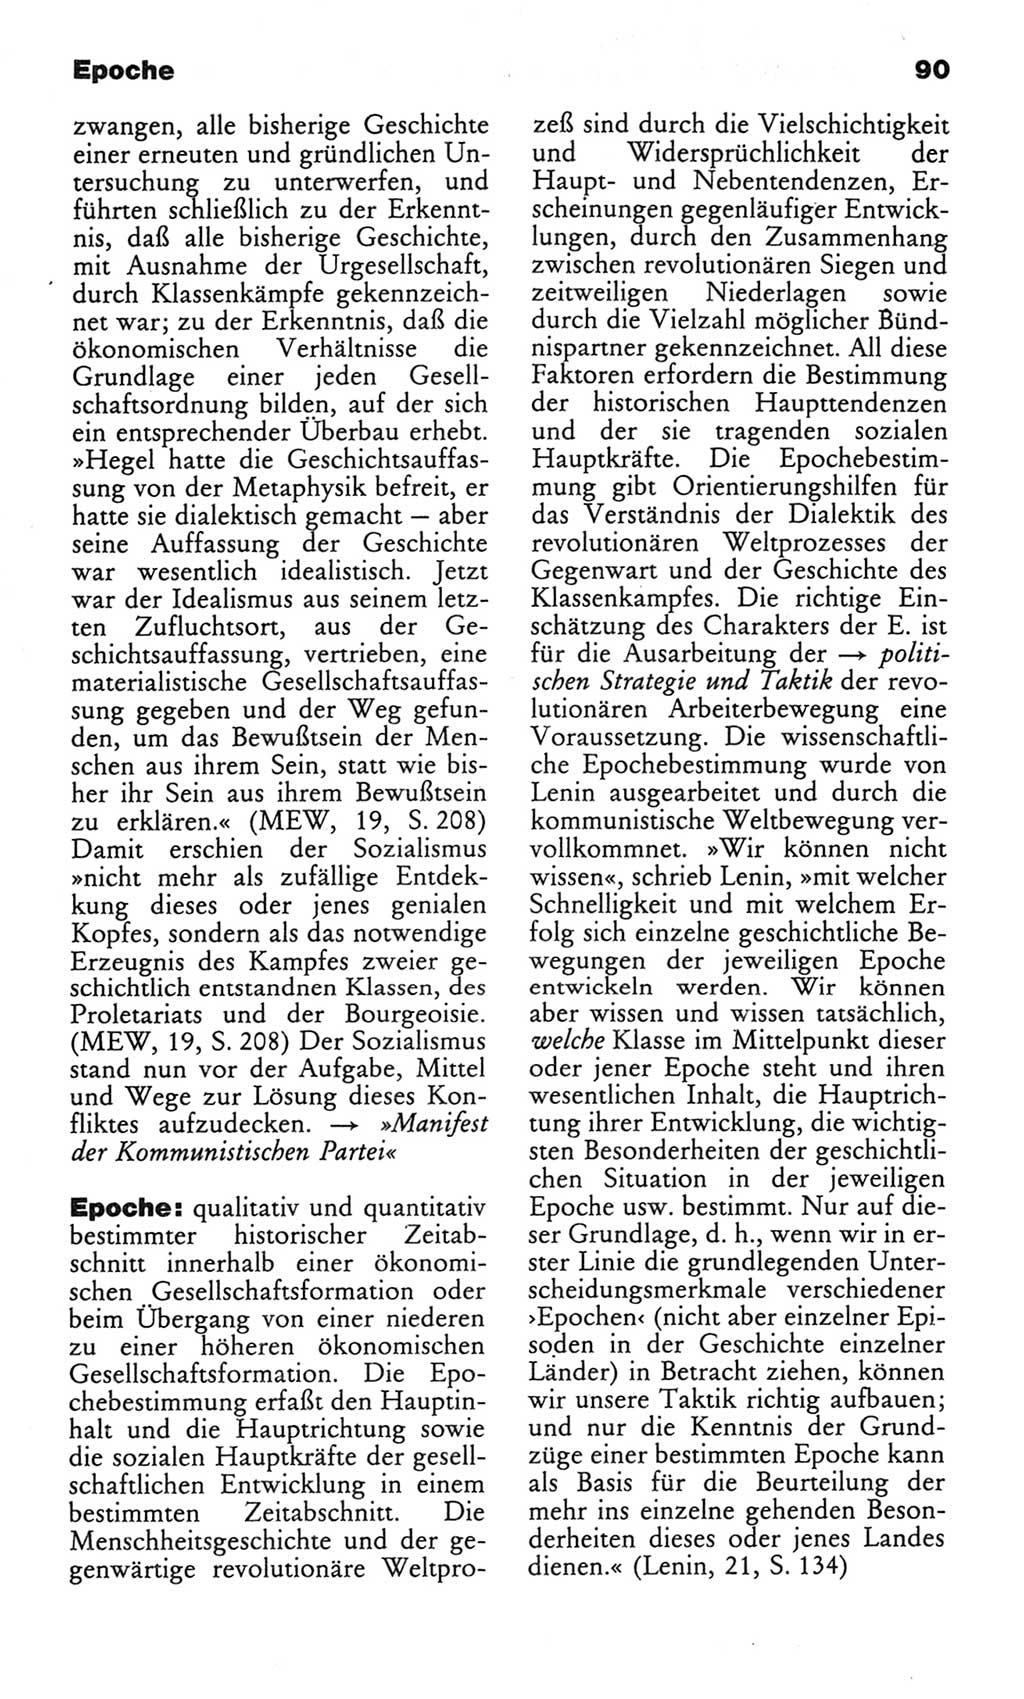 Wörterbuch des wissenschaftlichen Kommunismus [Deutsche Demokratische Republik (DDR)] 1982, Seite 90 (Wb. wiss. Komm. DDR 1982, S. 90)